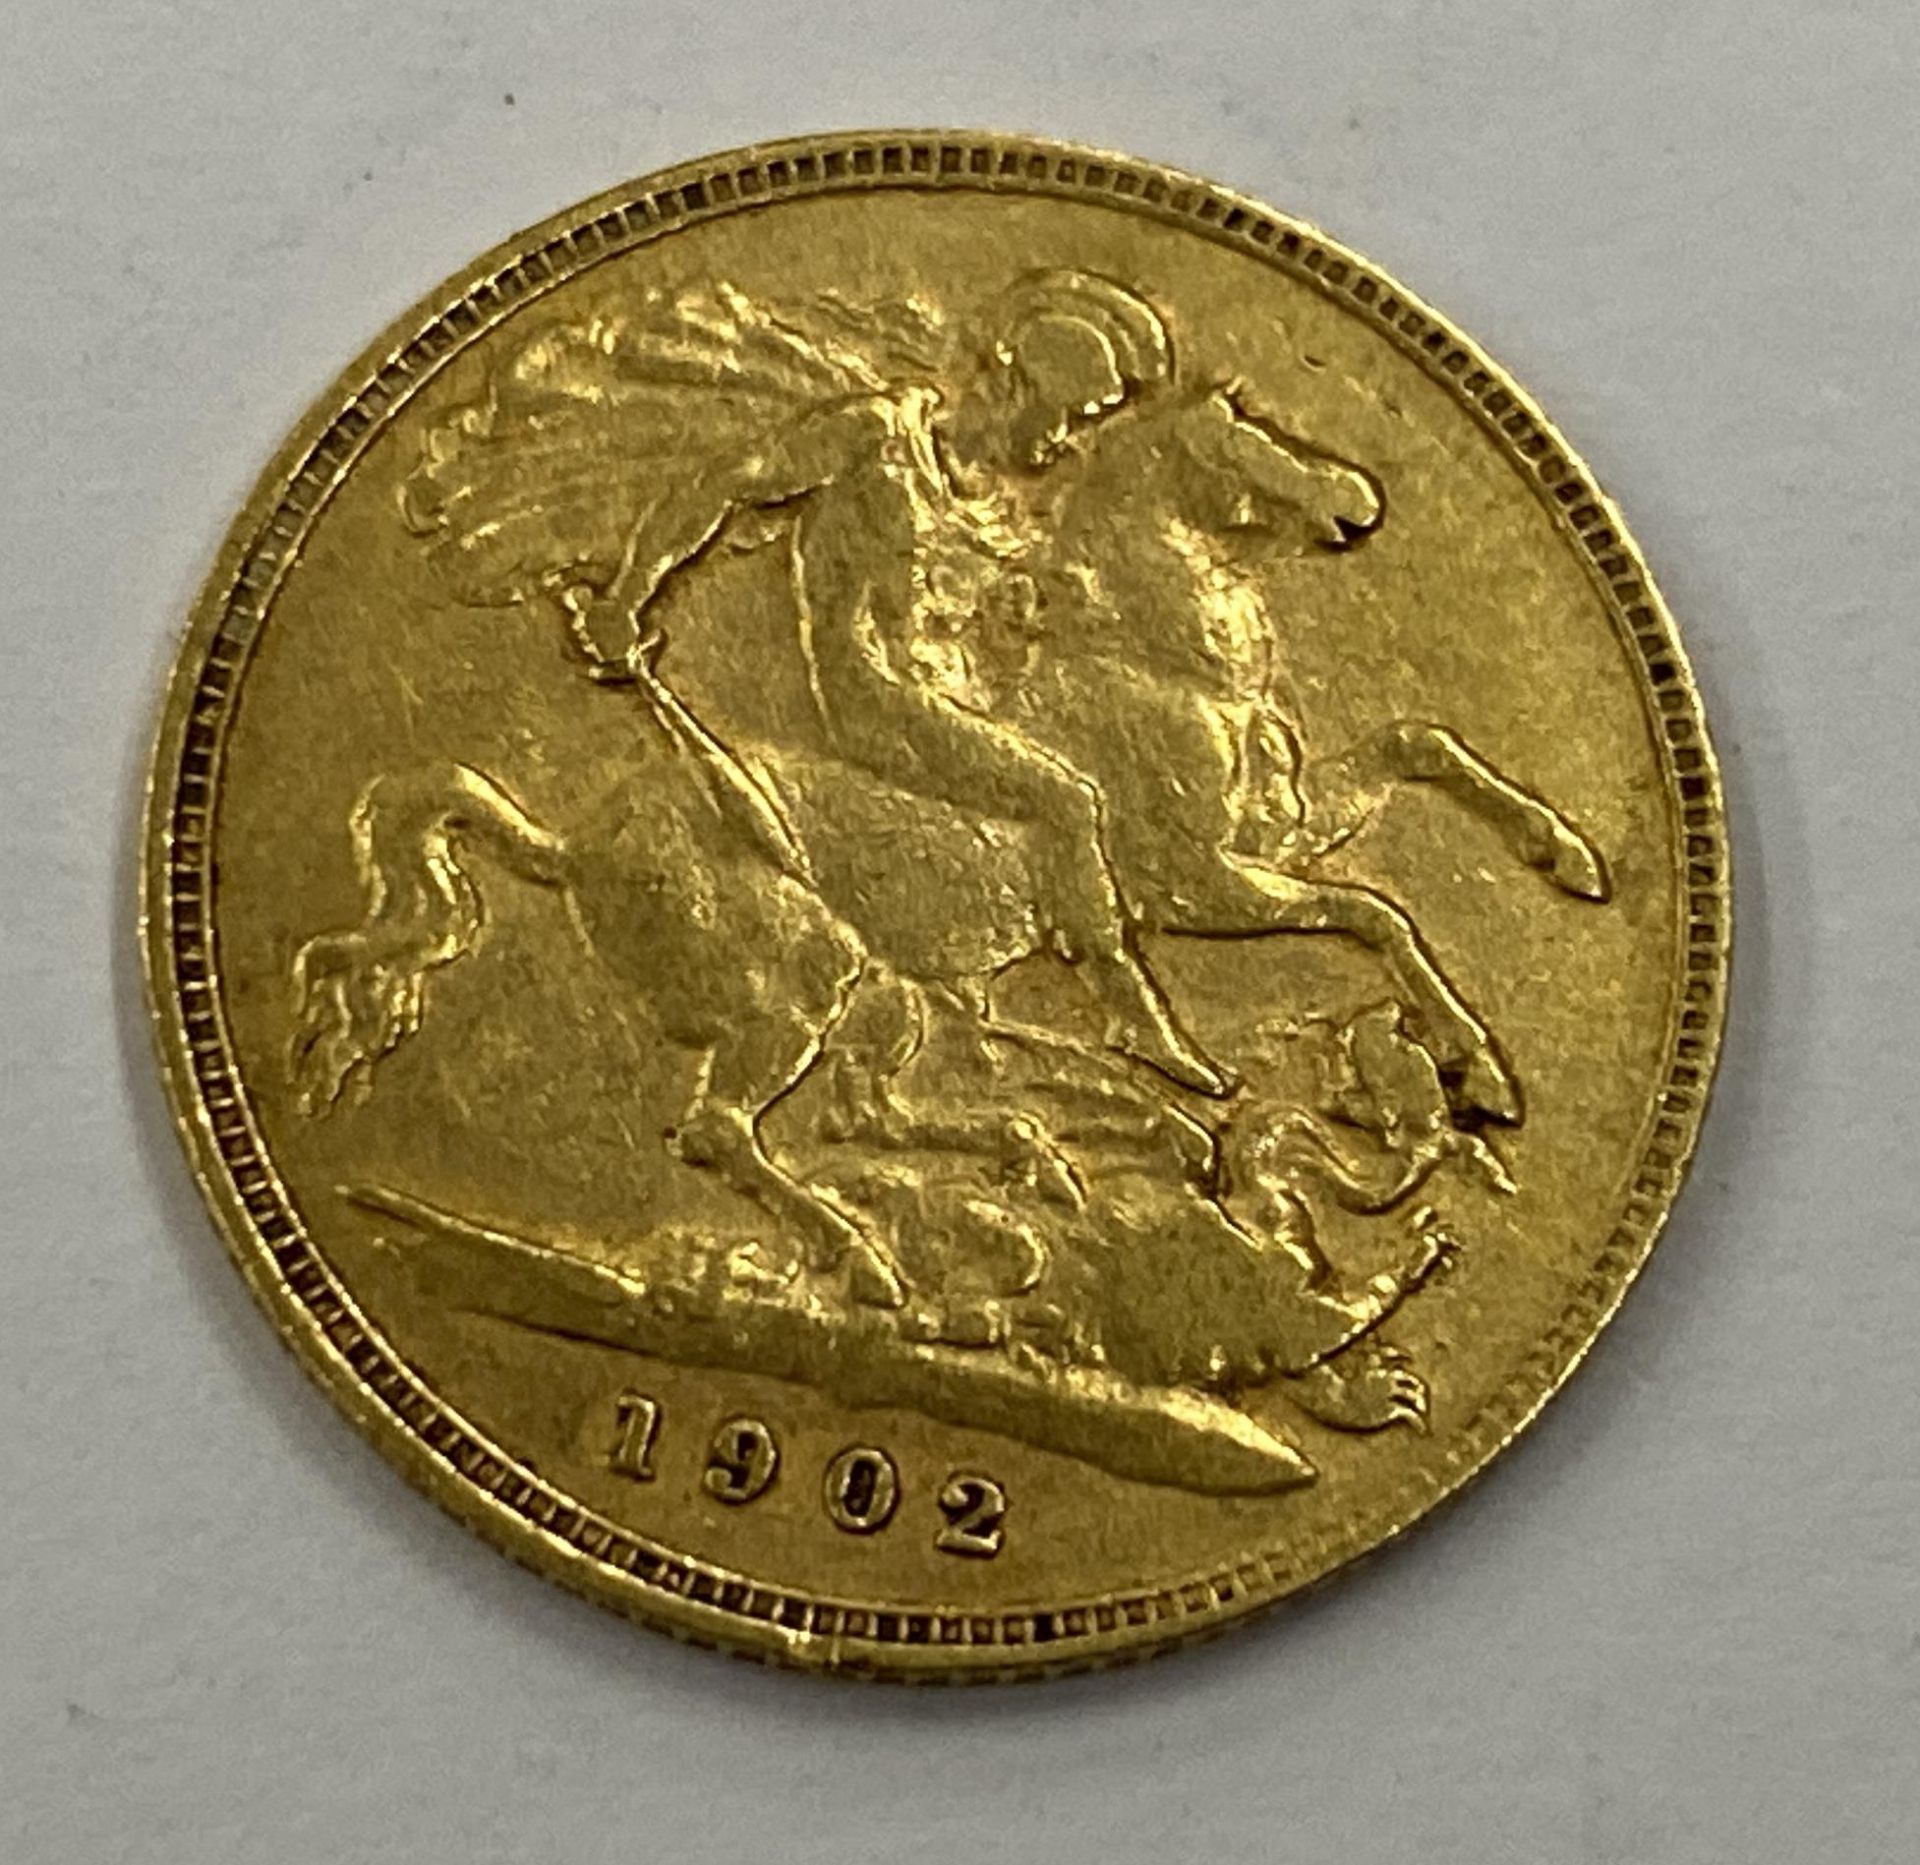 AN EDWARD VII 1902 GOLD HALF SOVEREIGN COIN